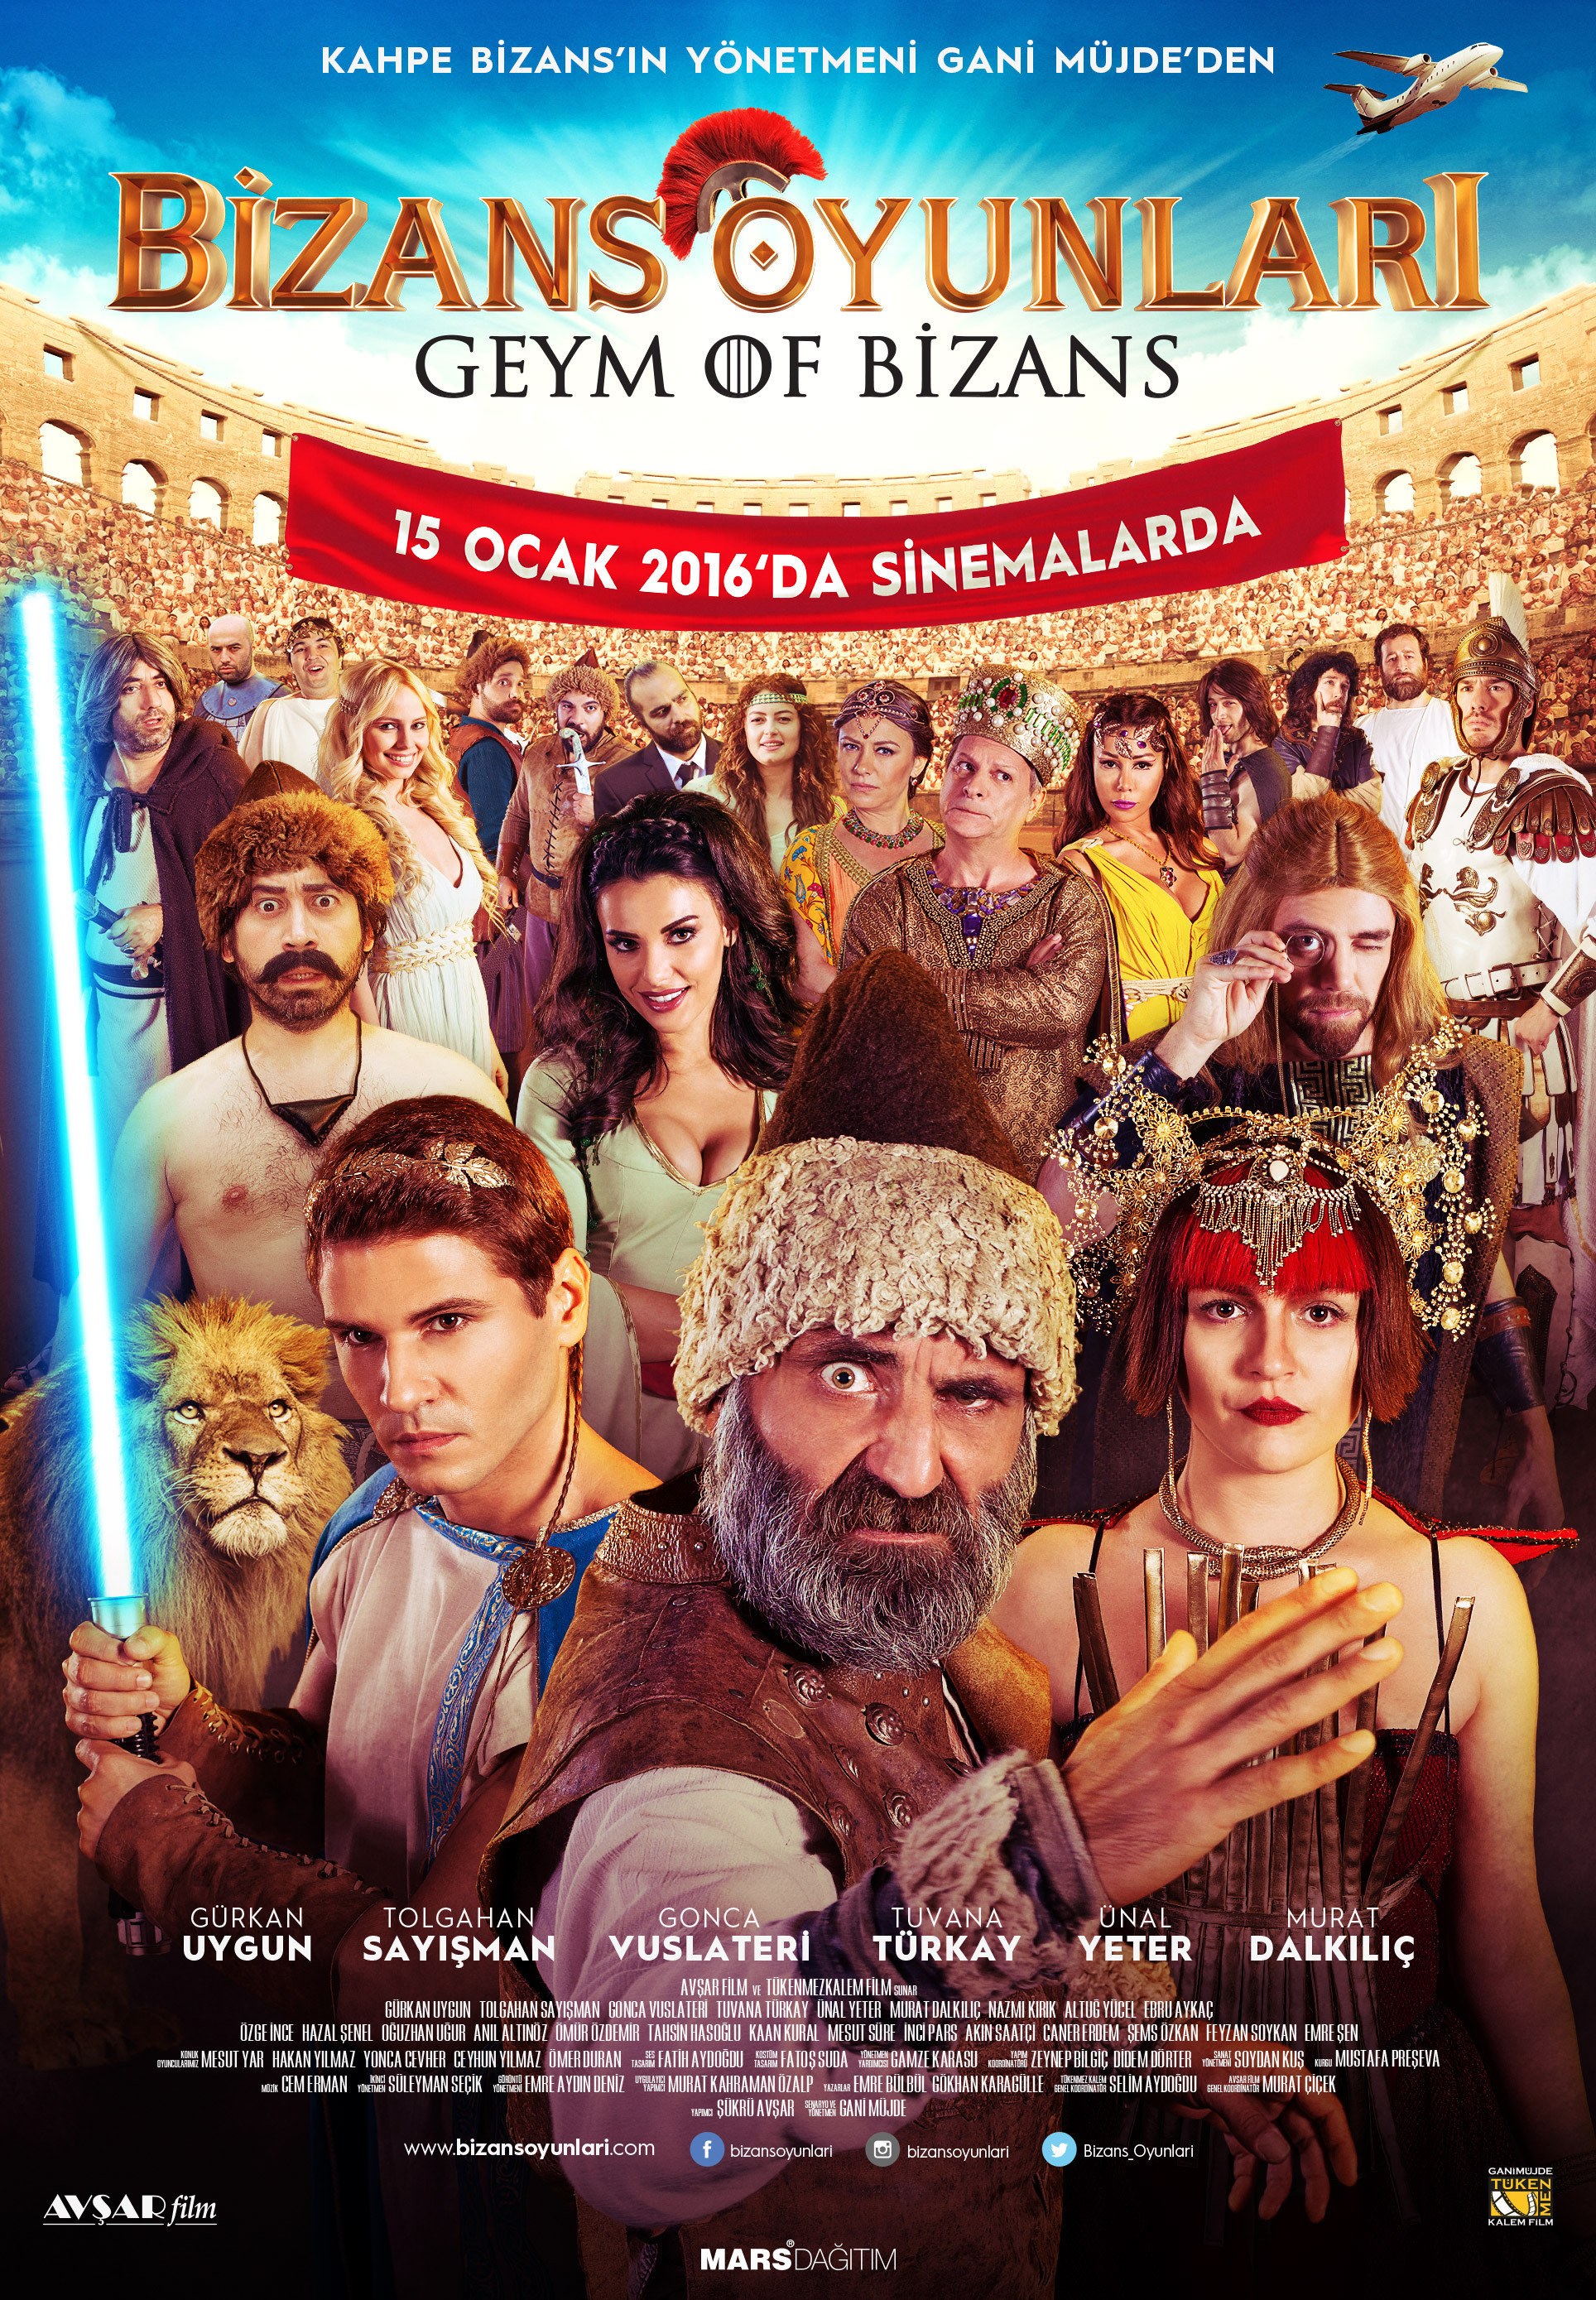 Bizans Oyunlari: Geym Of Bizans Main Poster